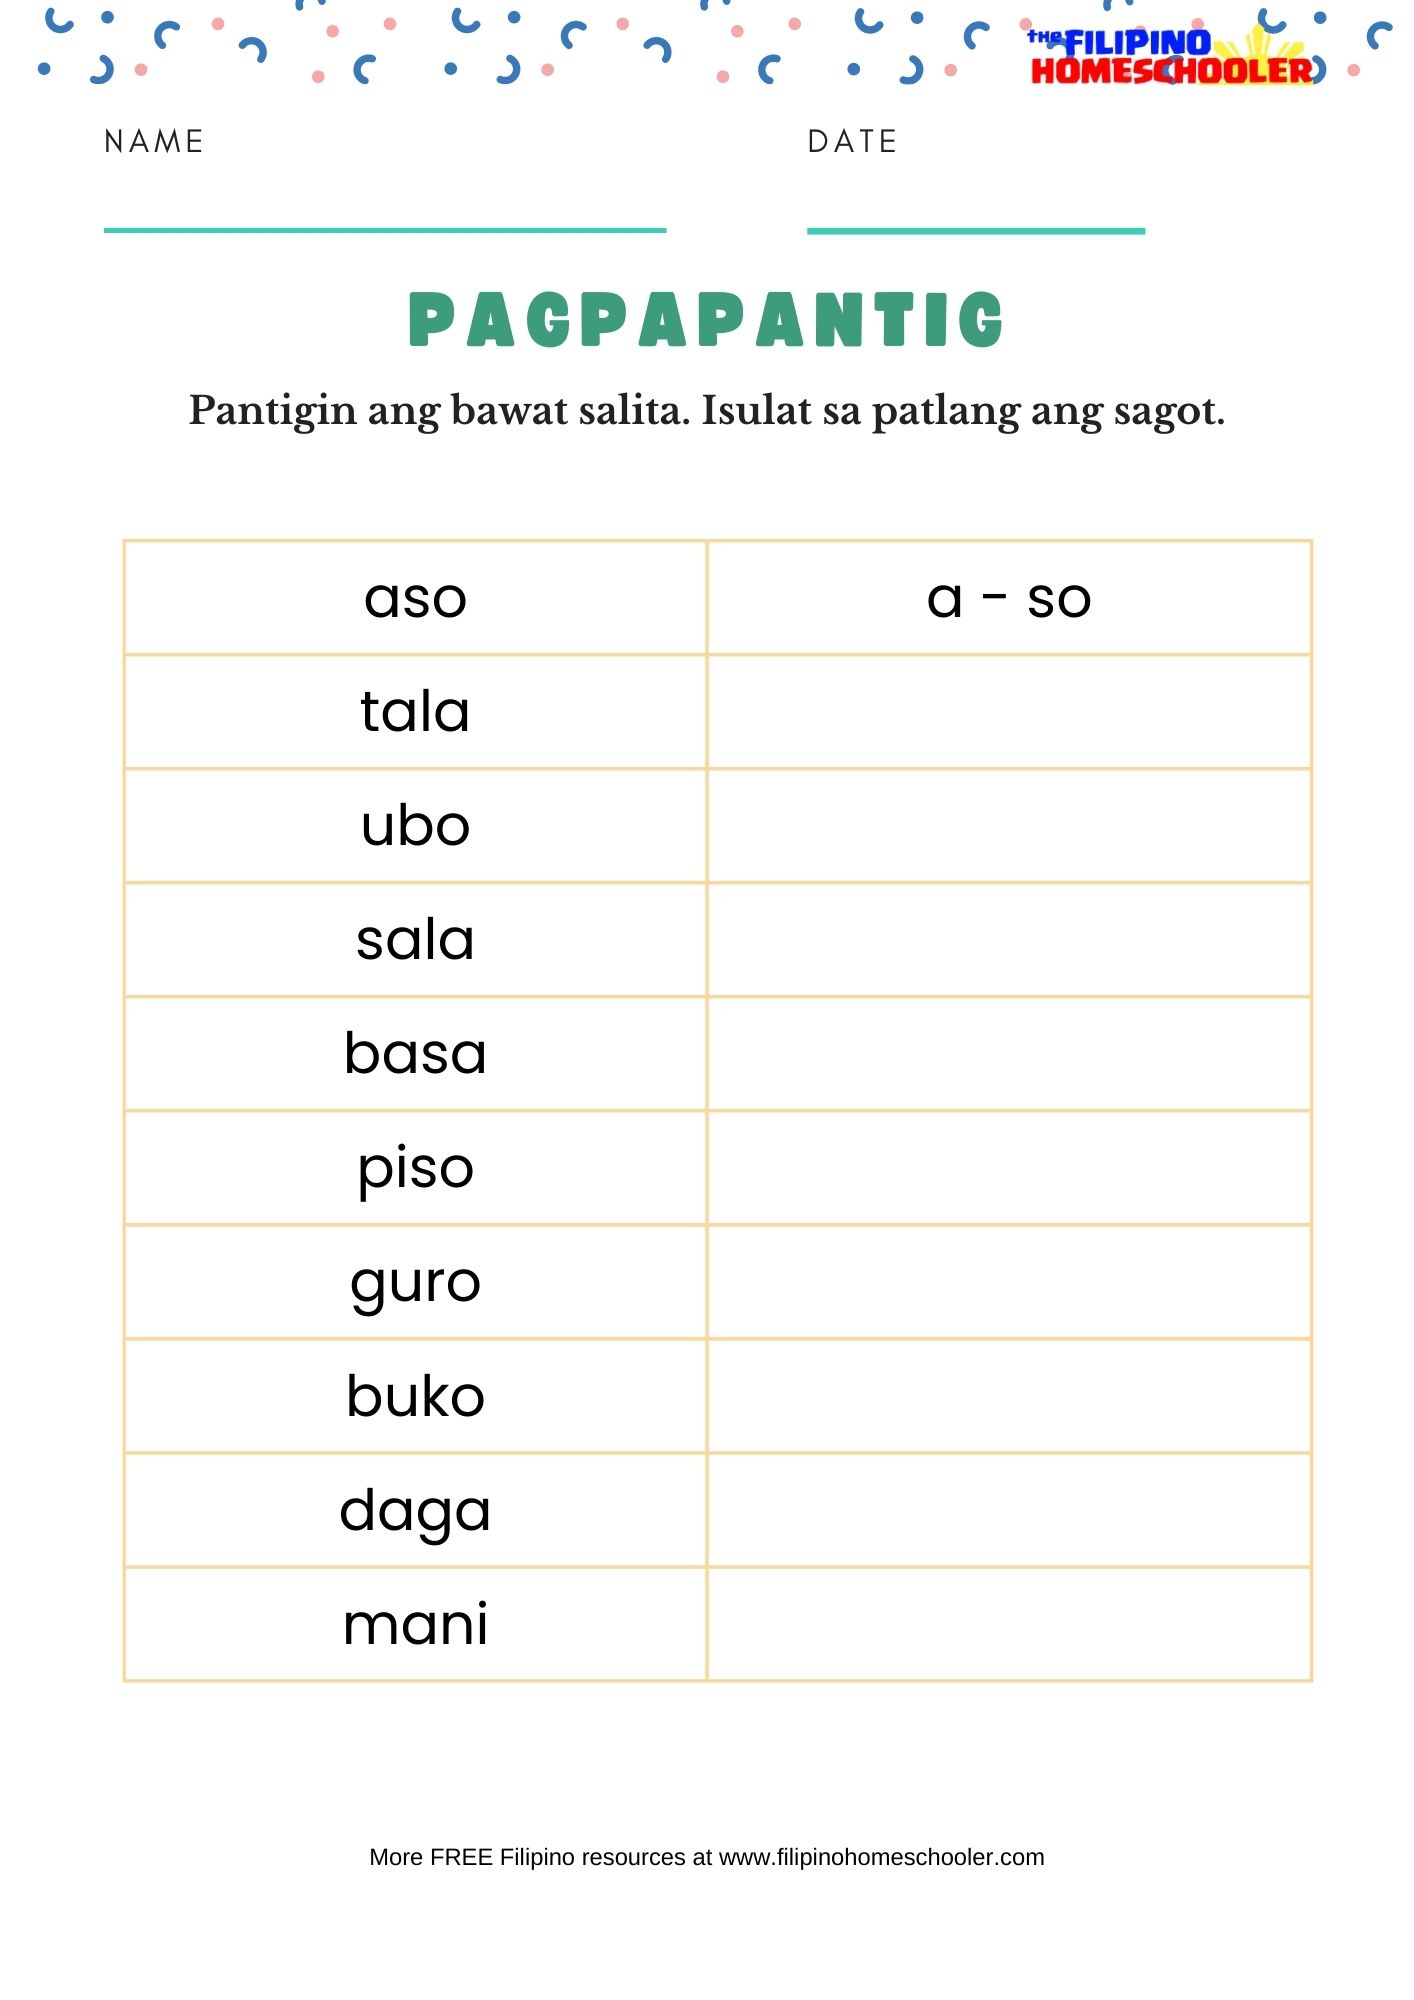 pagpapantig-free-filipino-worksheets-set-1-the-filipino-homeschooler